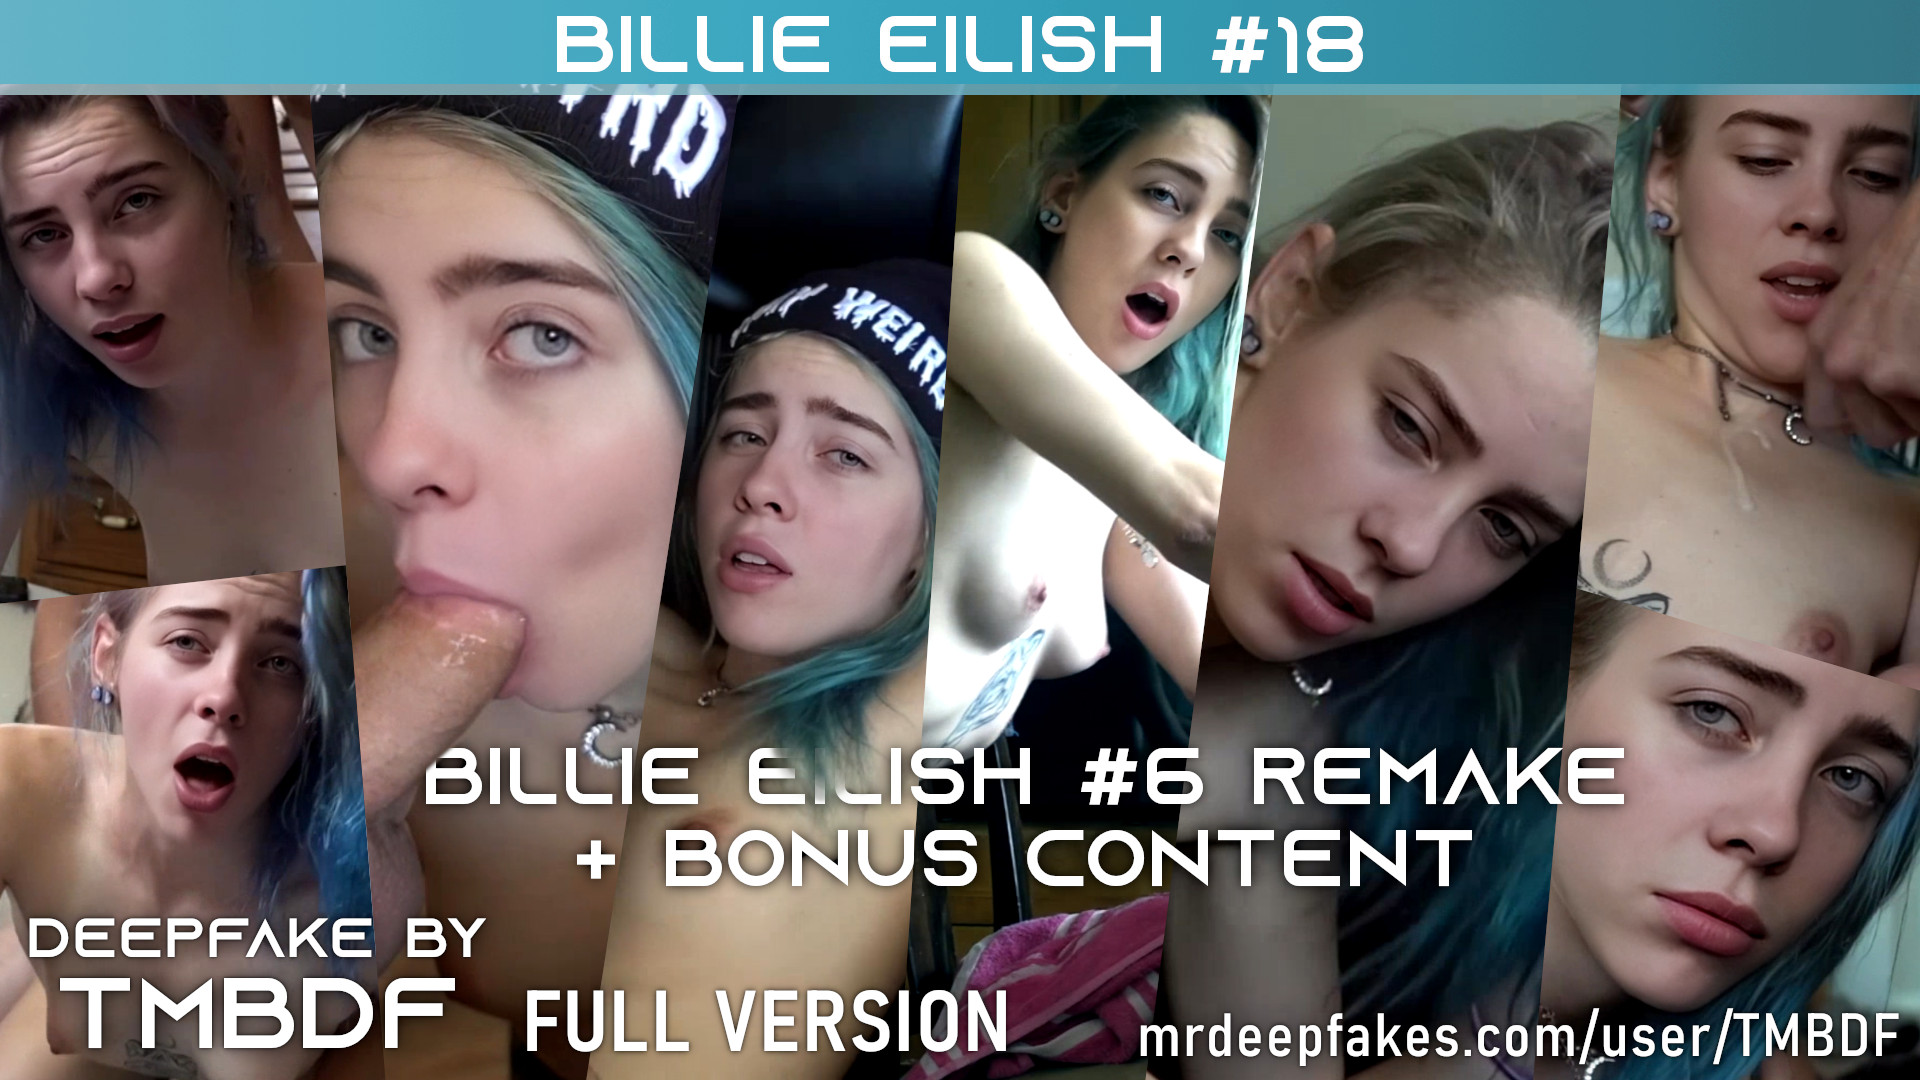 Billie Eilish #18 (#6 Remake + bonus content) - FULL VERSION